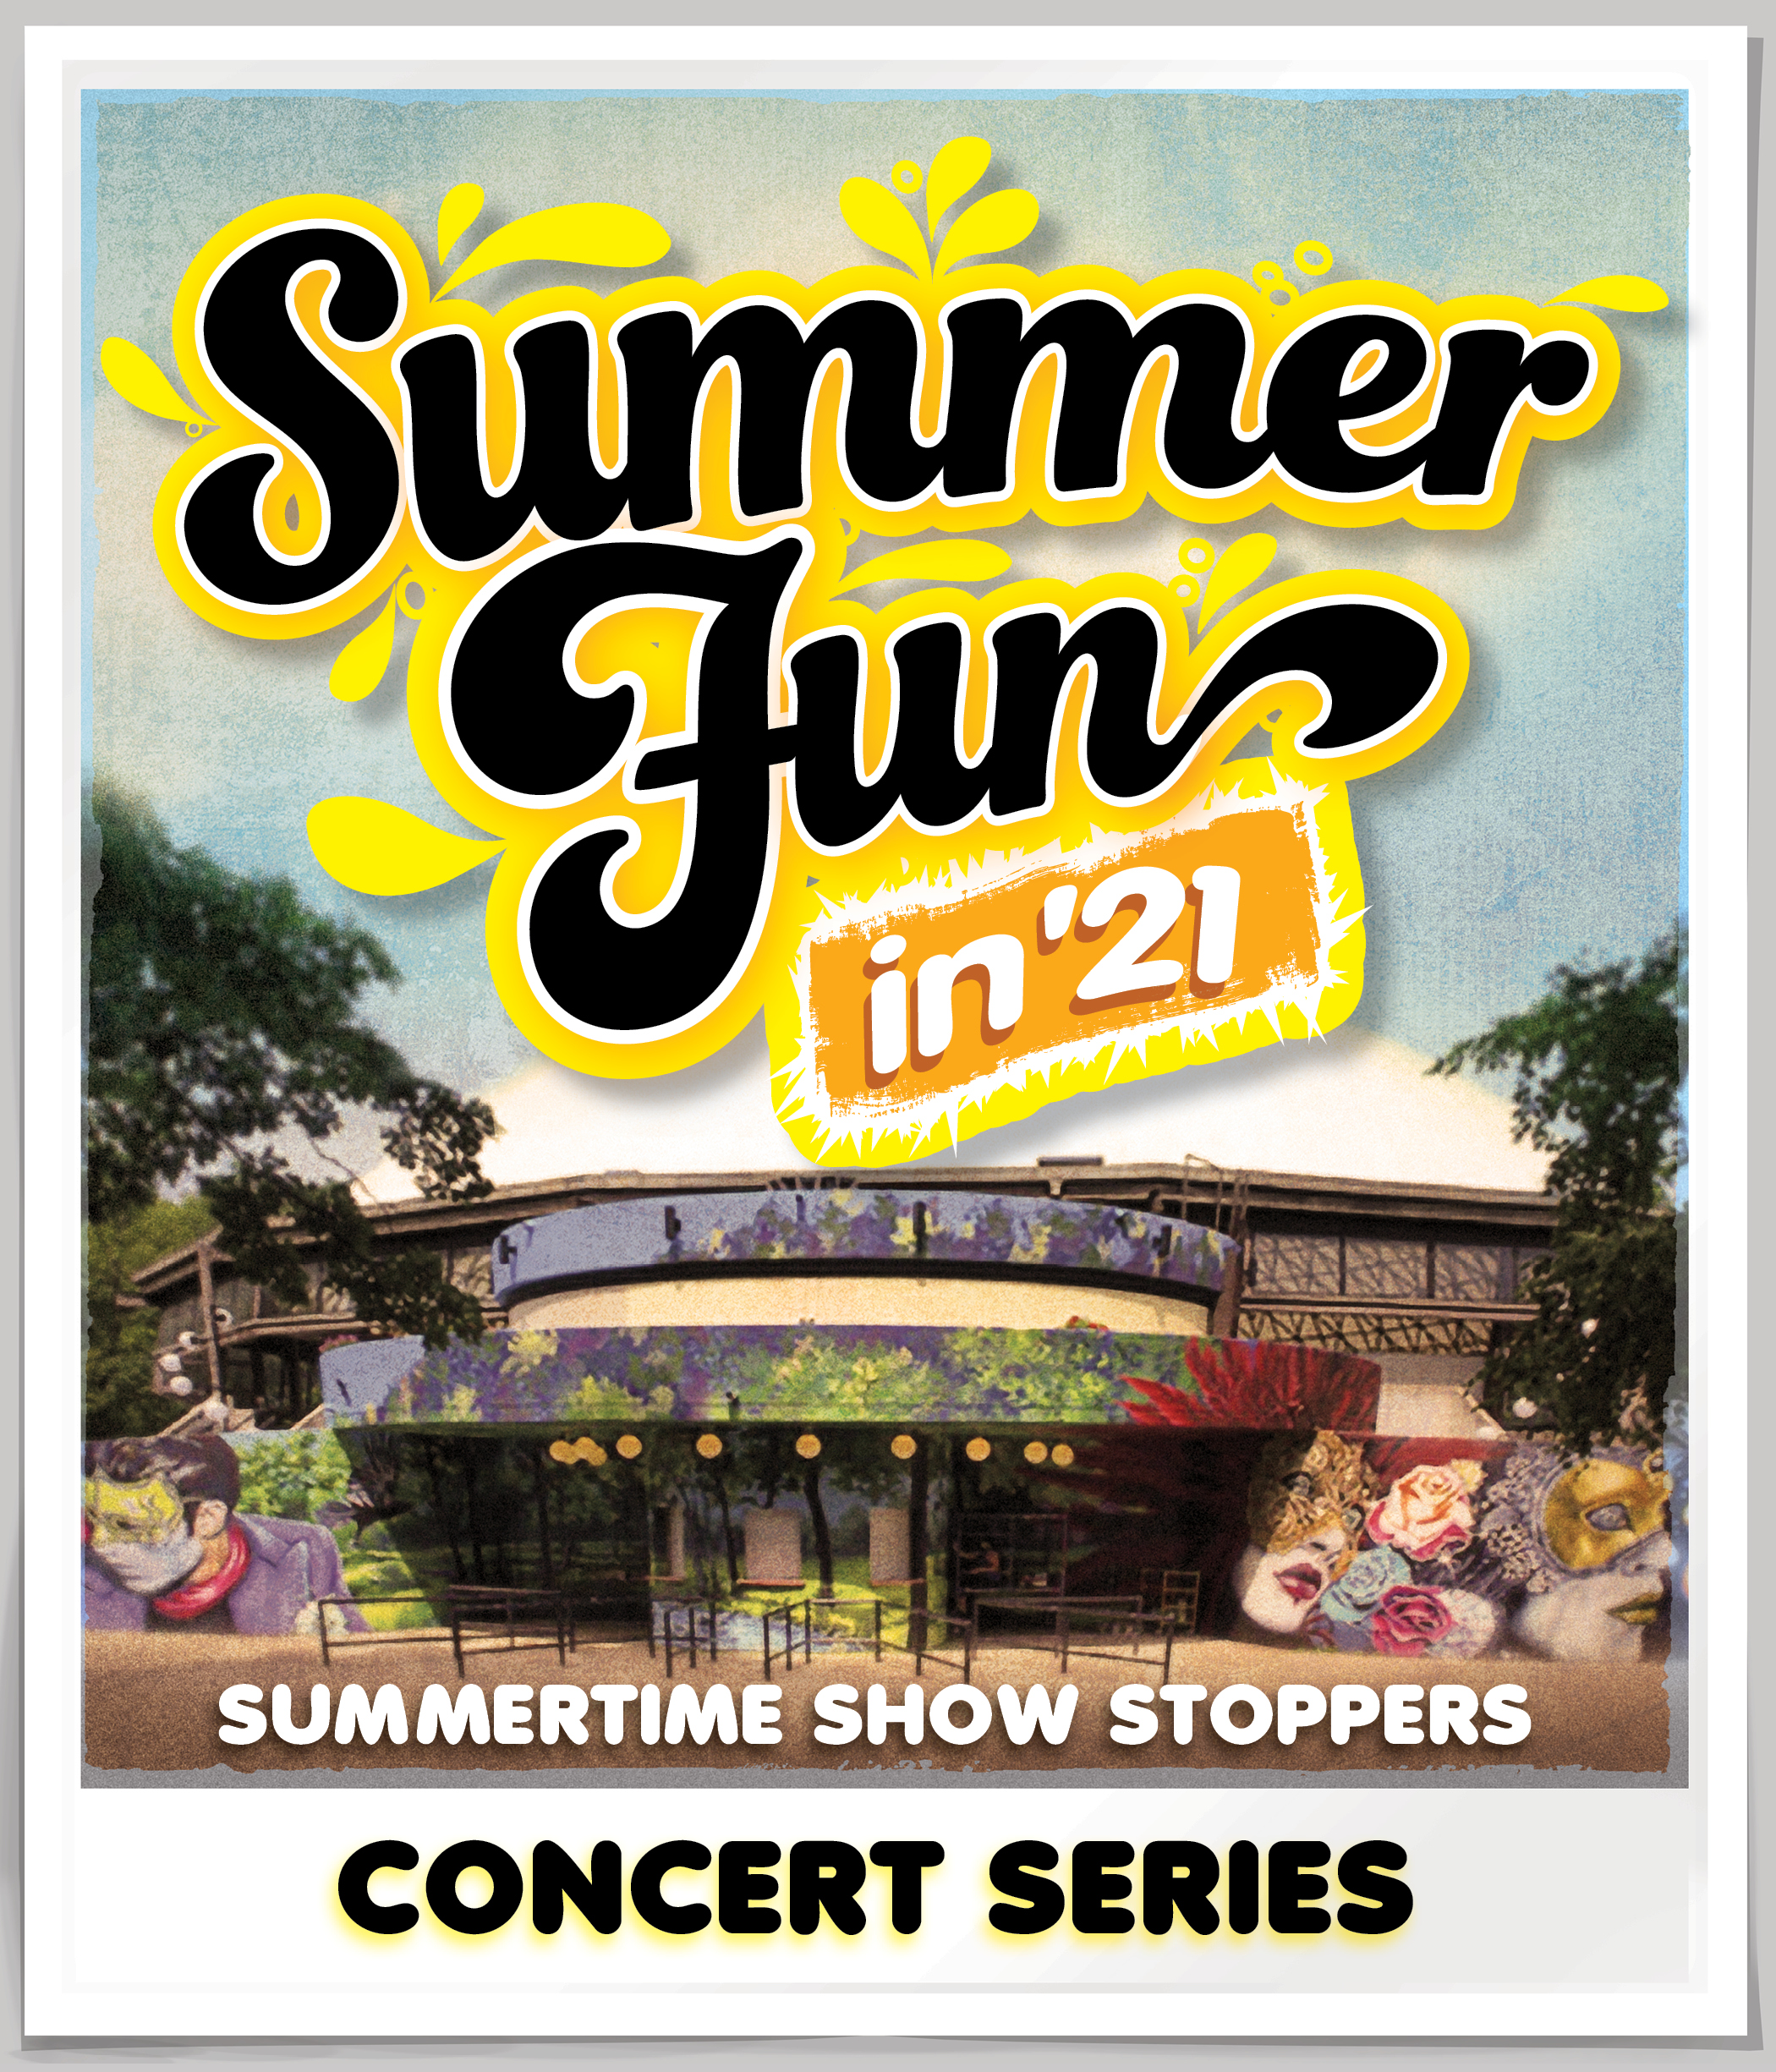 Summer Fun 21 concert series